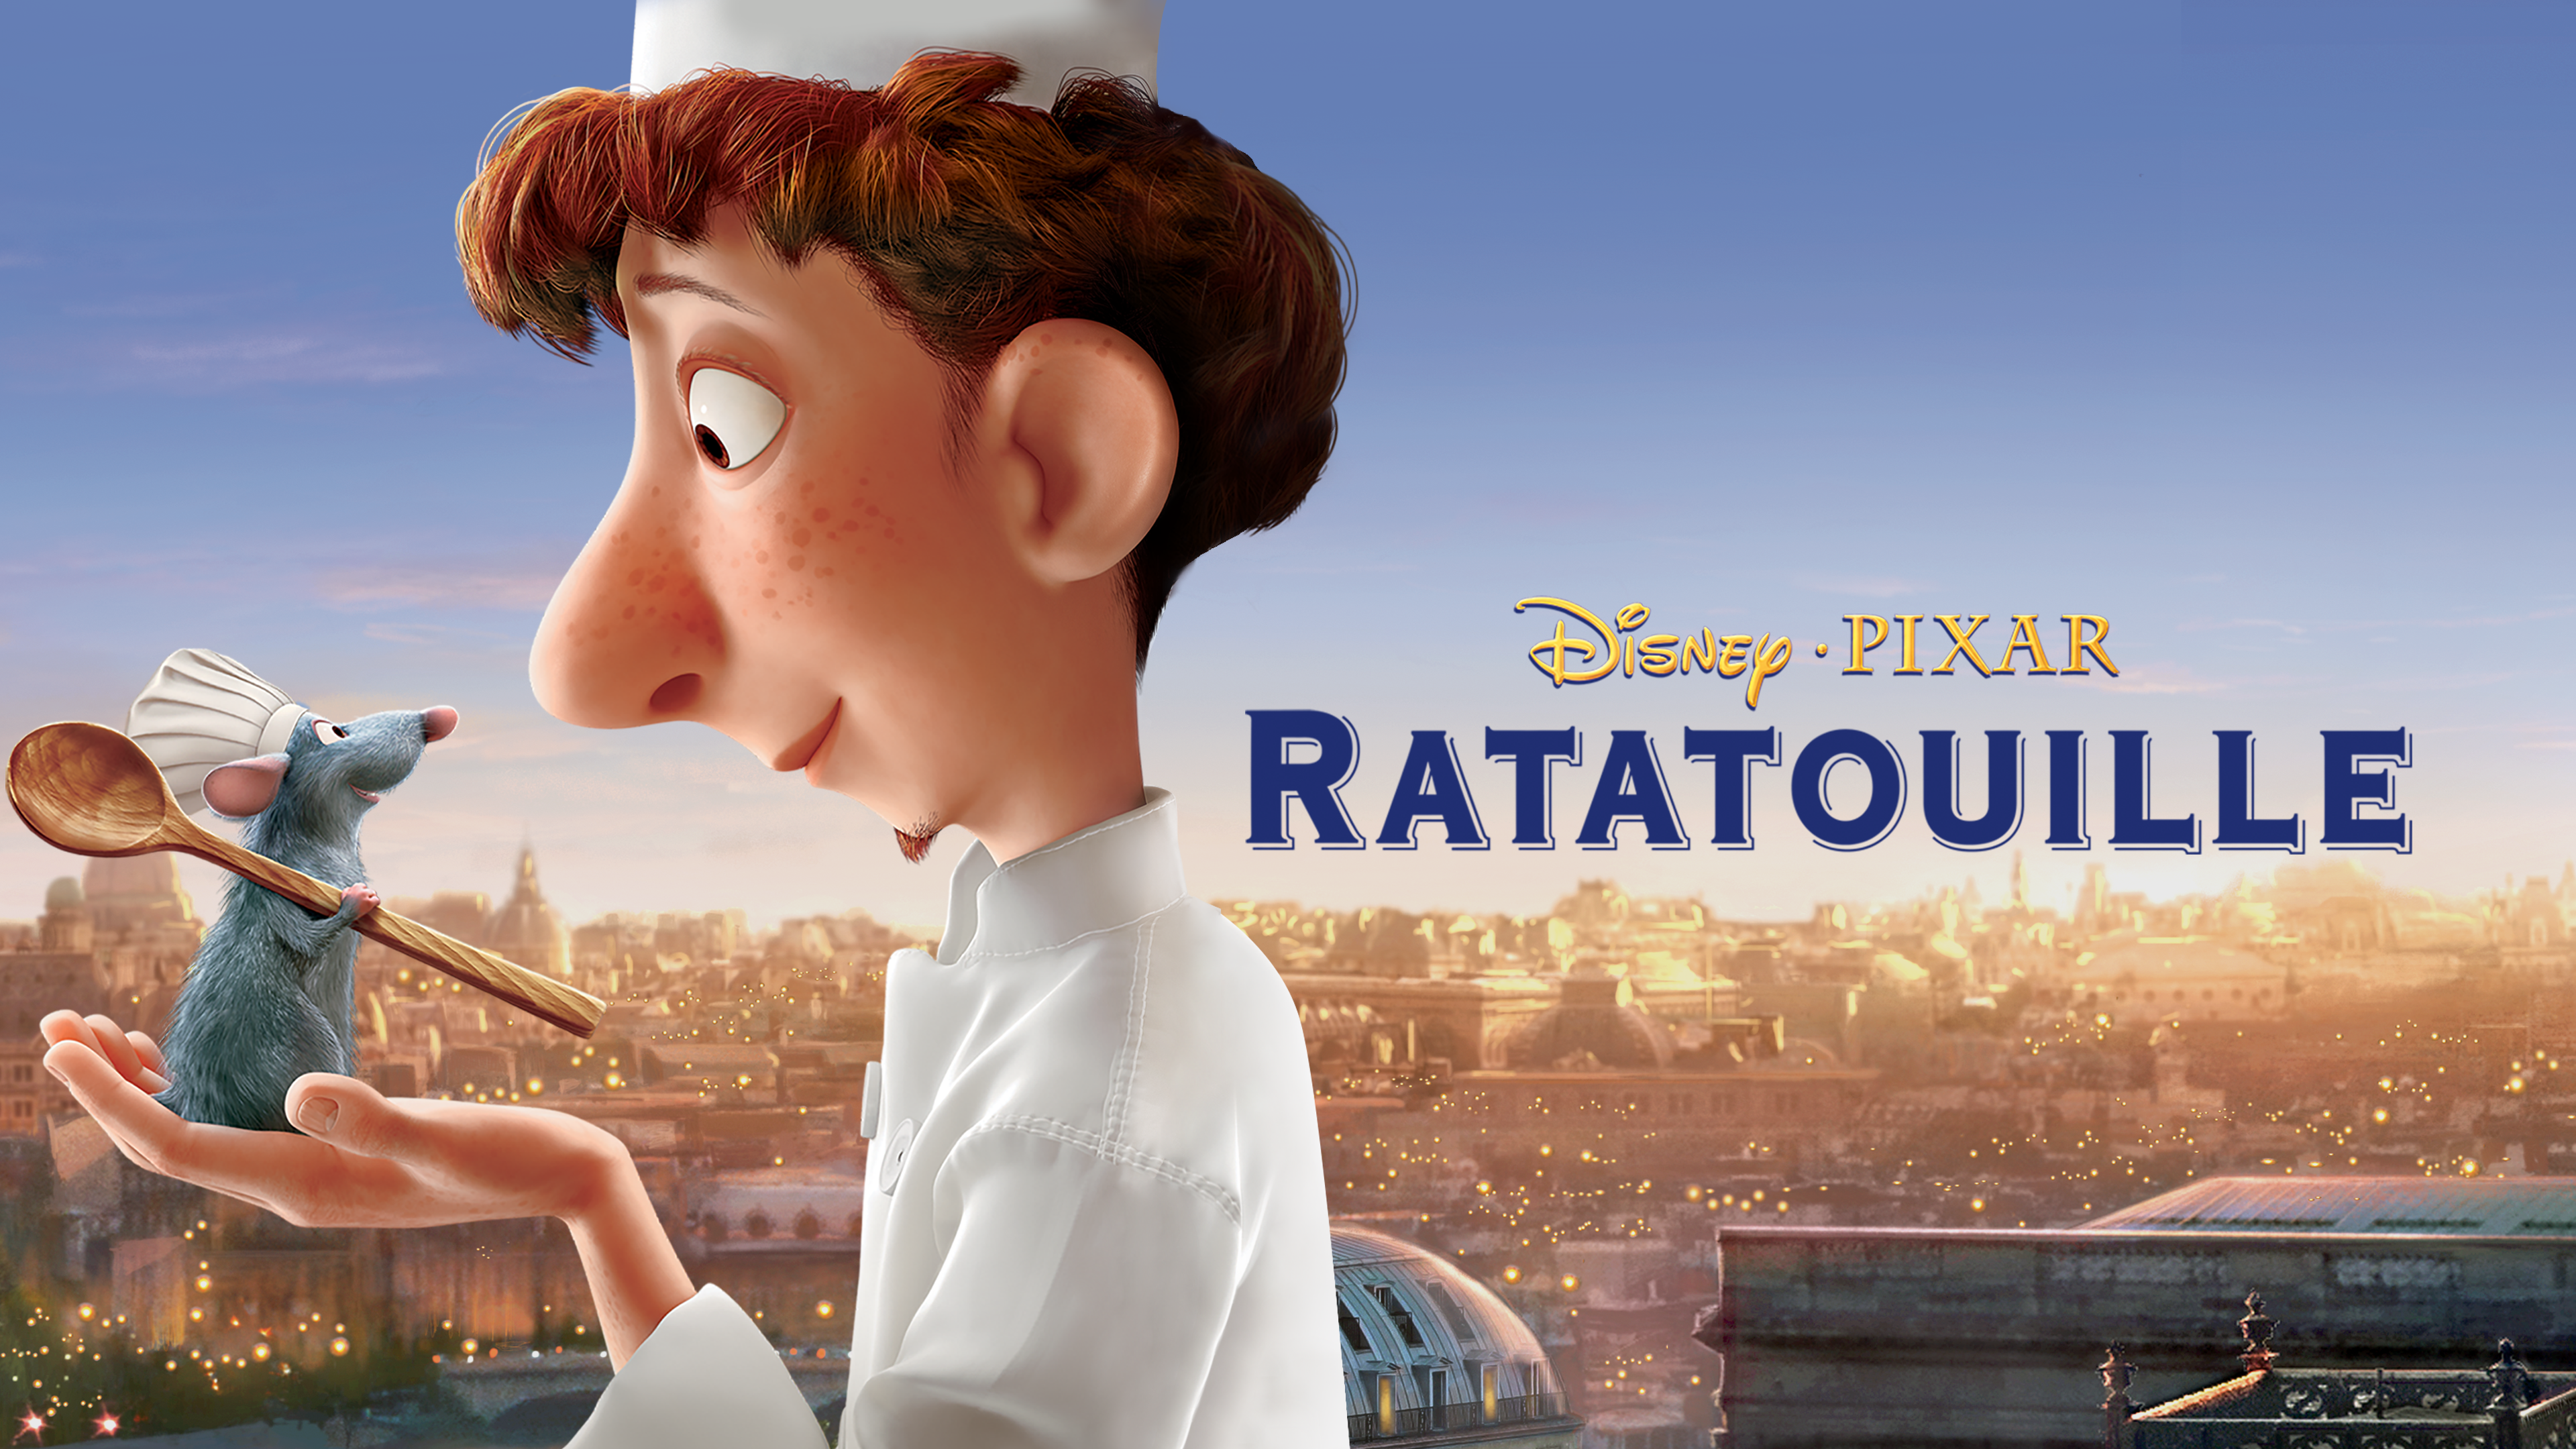 Filmbeschreibung zu Ratatouille